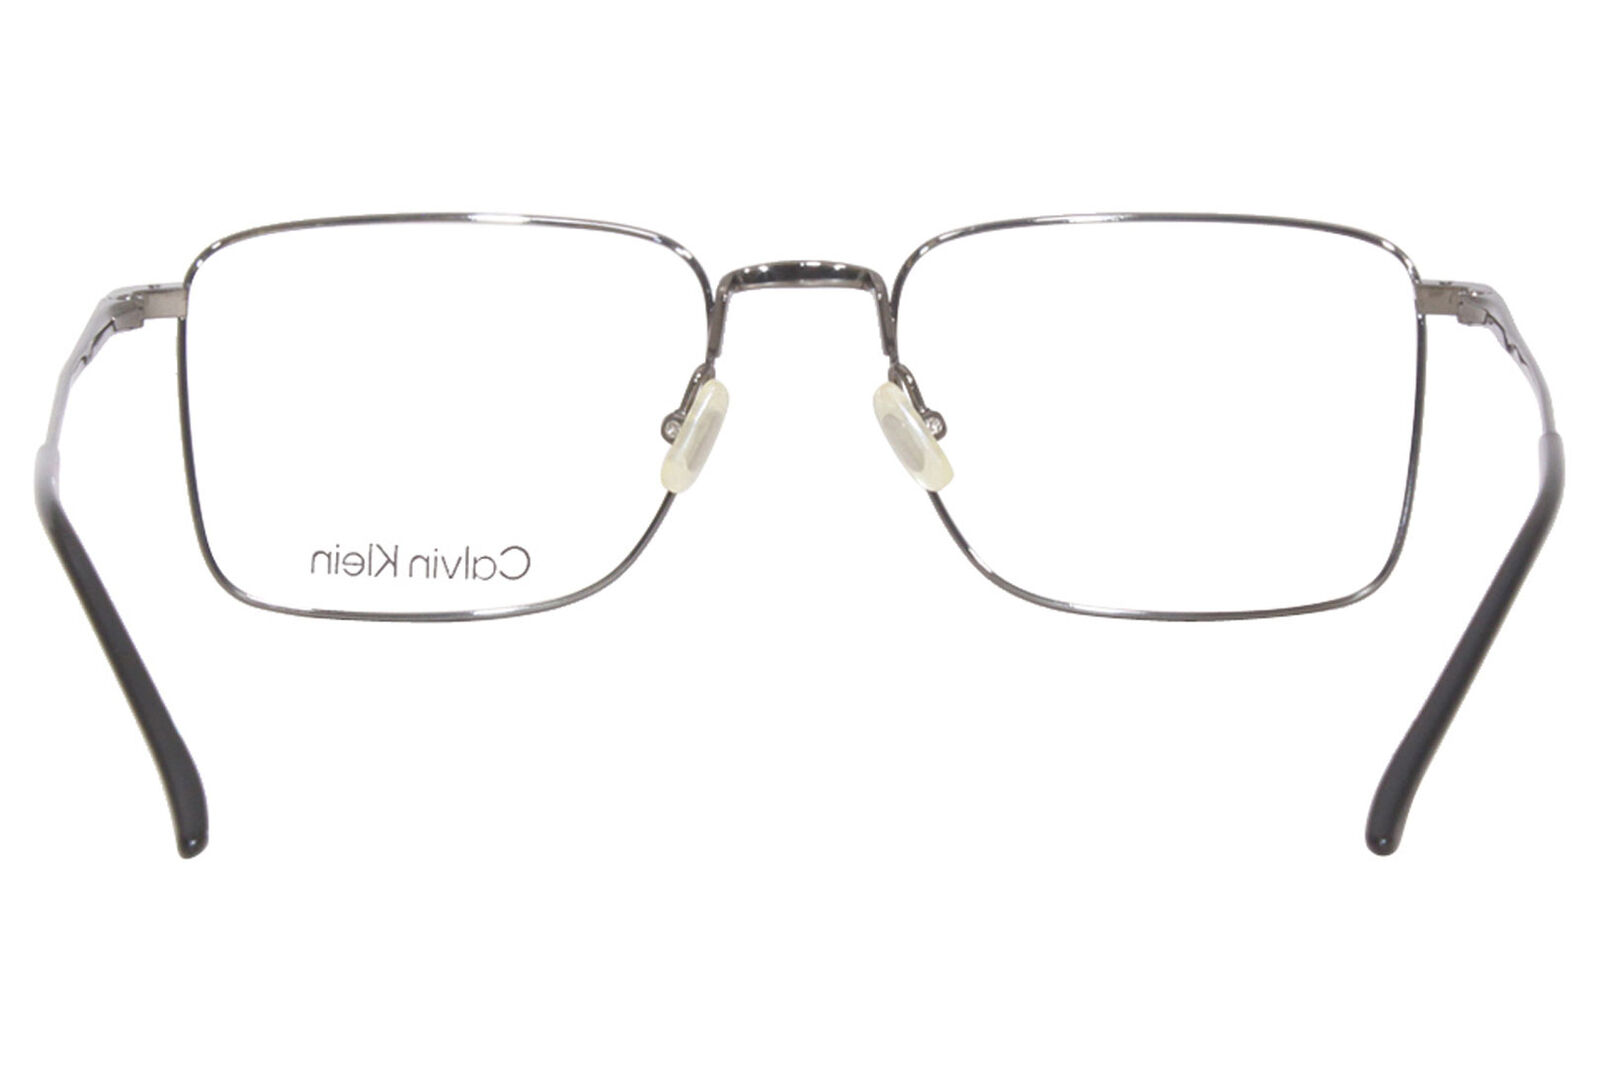 Calvin Klein CK22109T 014 Titanium Eyeglasses Men's Light Gunmetal Full Rim  53mm | eBay